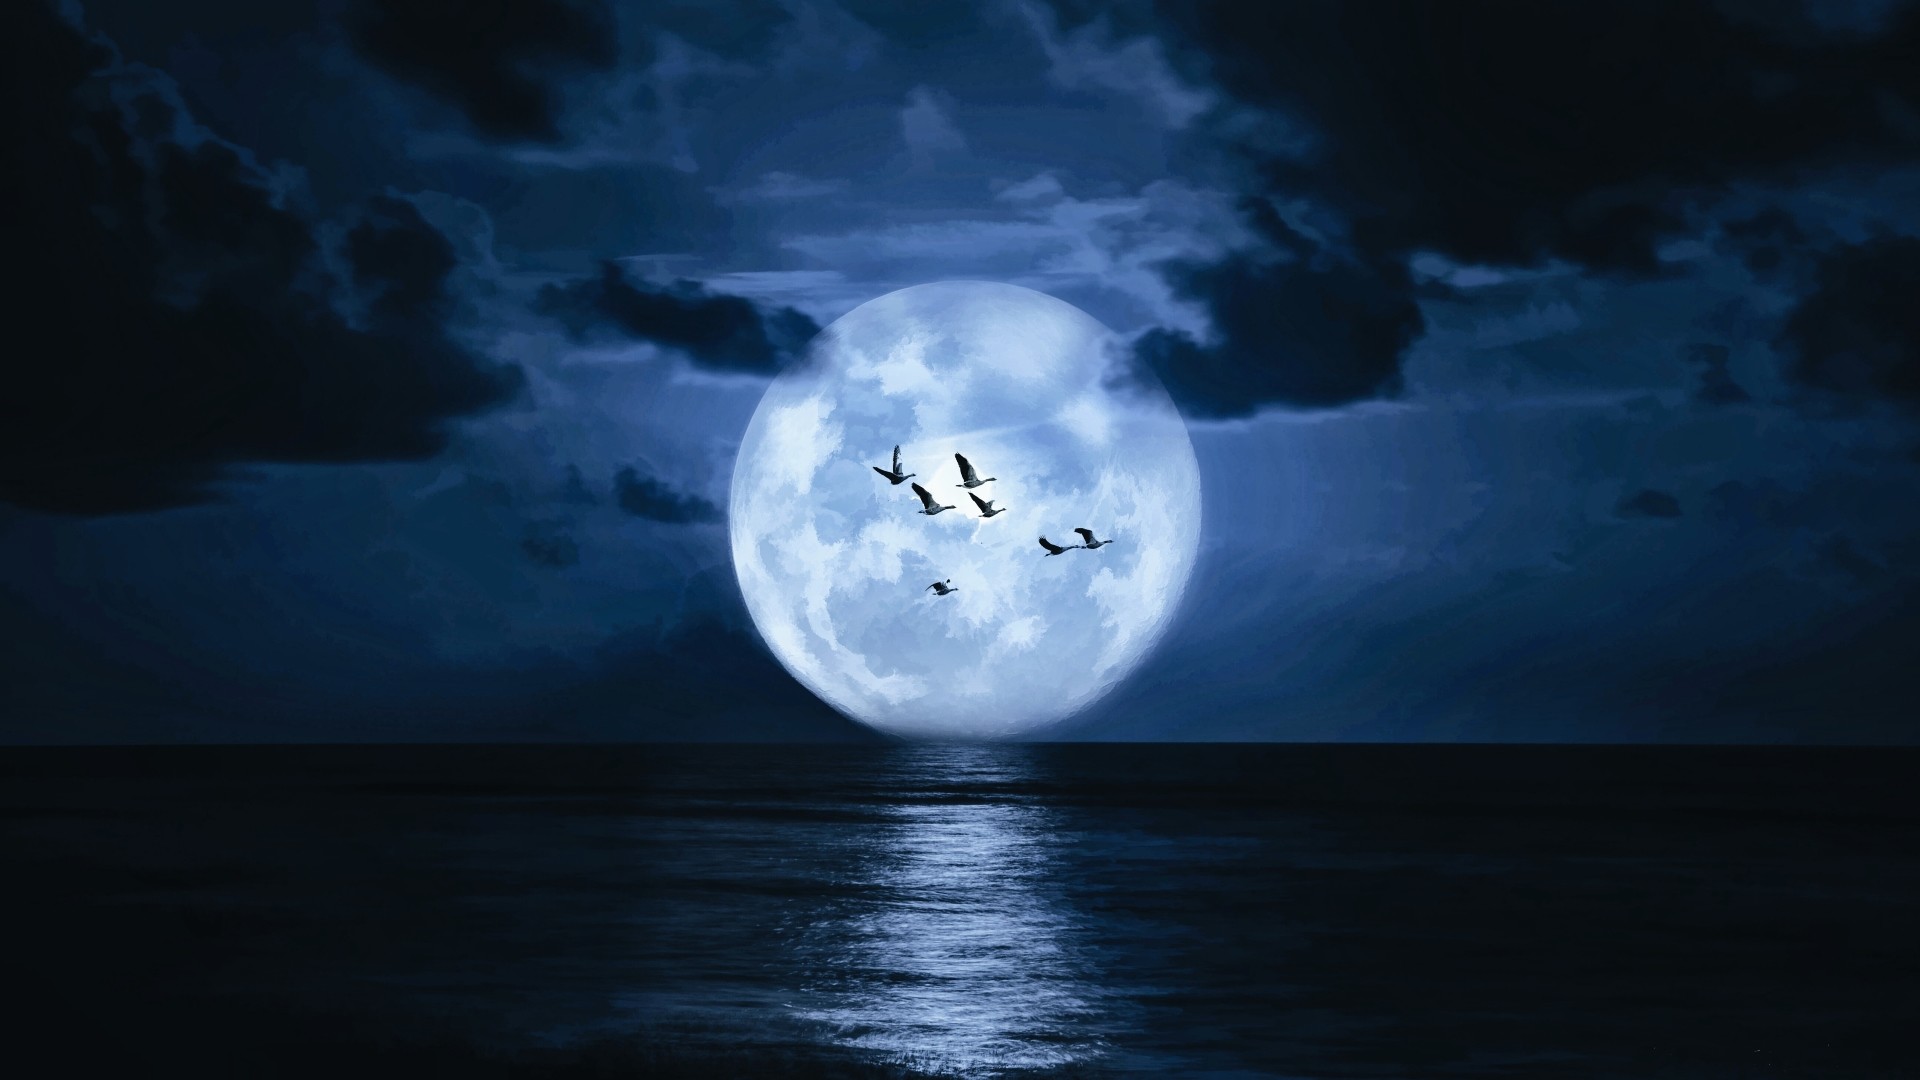 1920x1080 Very big moon, birds, sea, clouds, dark wallpaper: